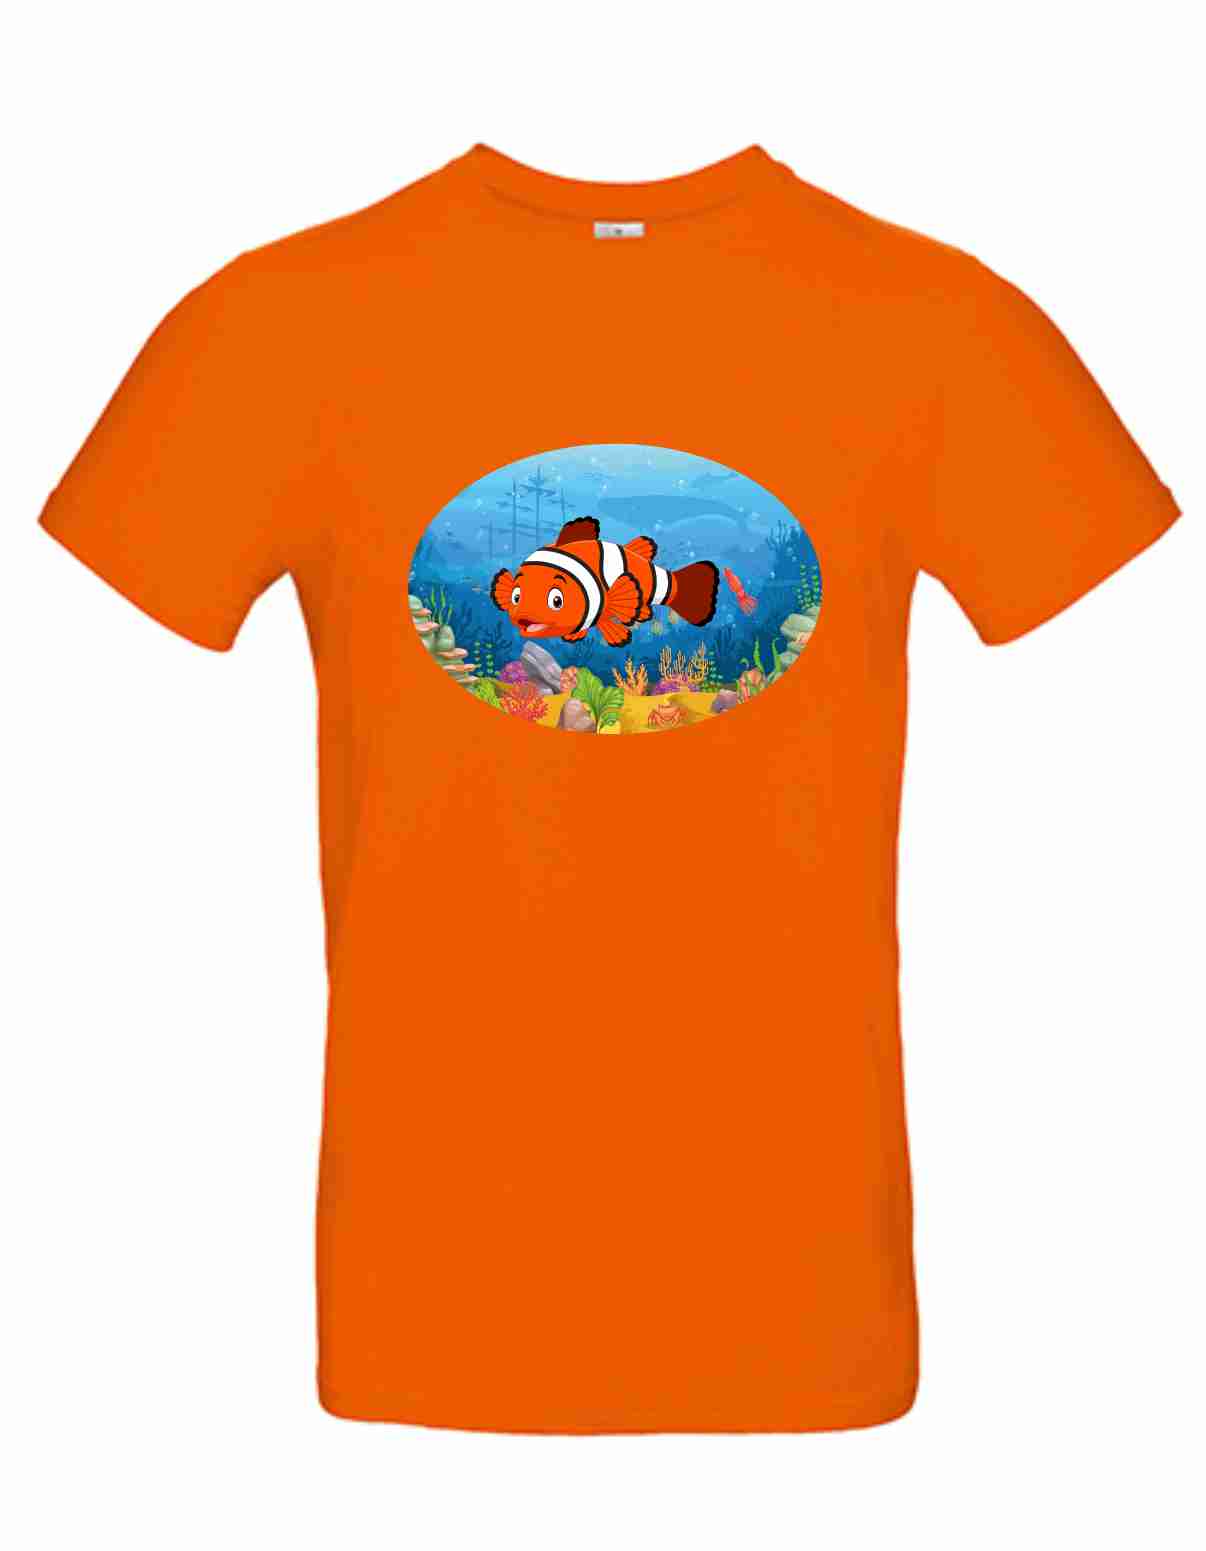 T-Shirt B&C Kids´ Exact 190 Mit Aufdruck "Clown Fish" auch zum selbst gestalten